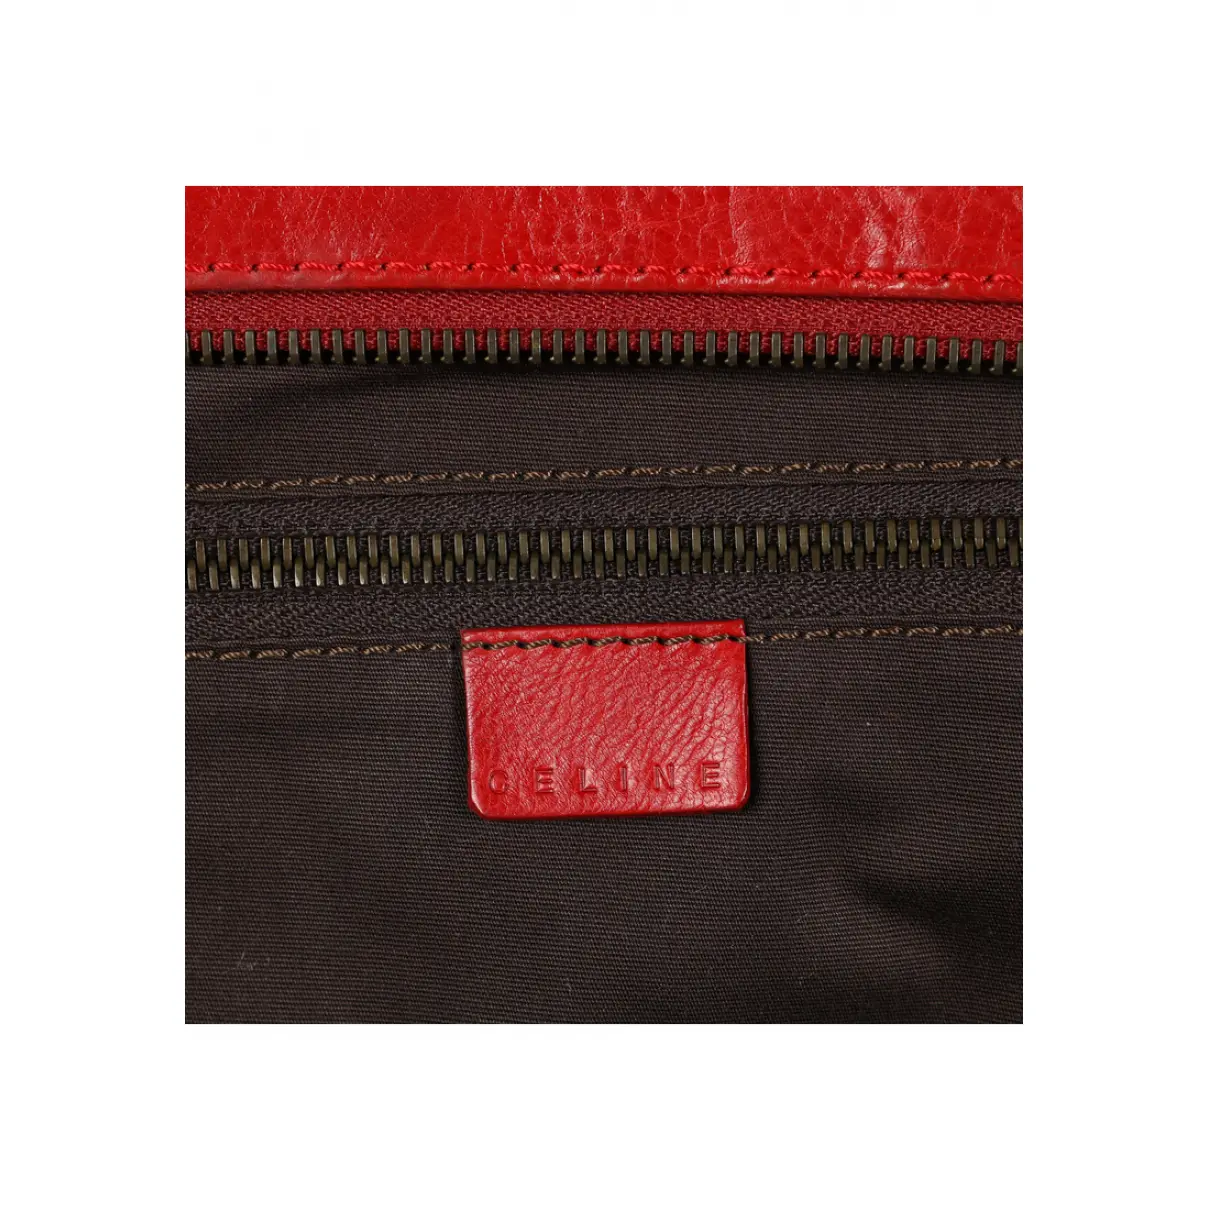 Leather bag Celine - Vintage